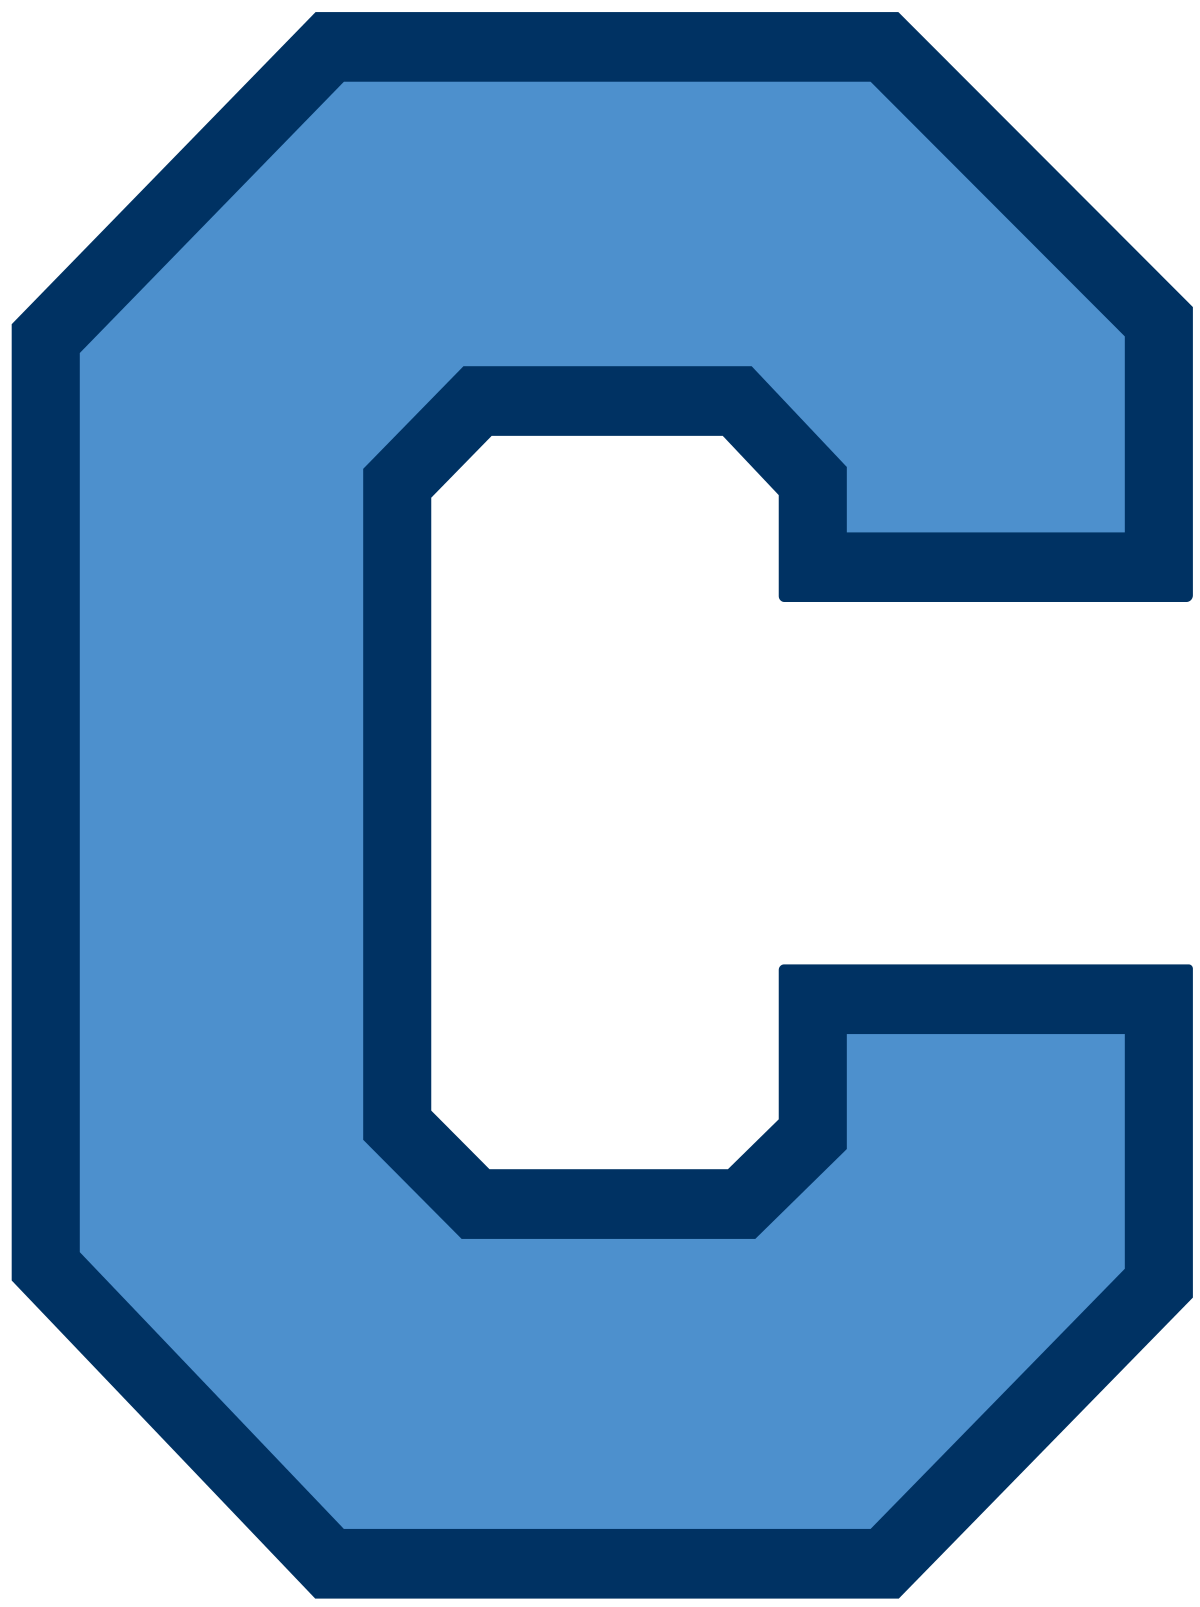 Citadel Logo - The Citadel Bulldogs football